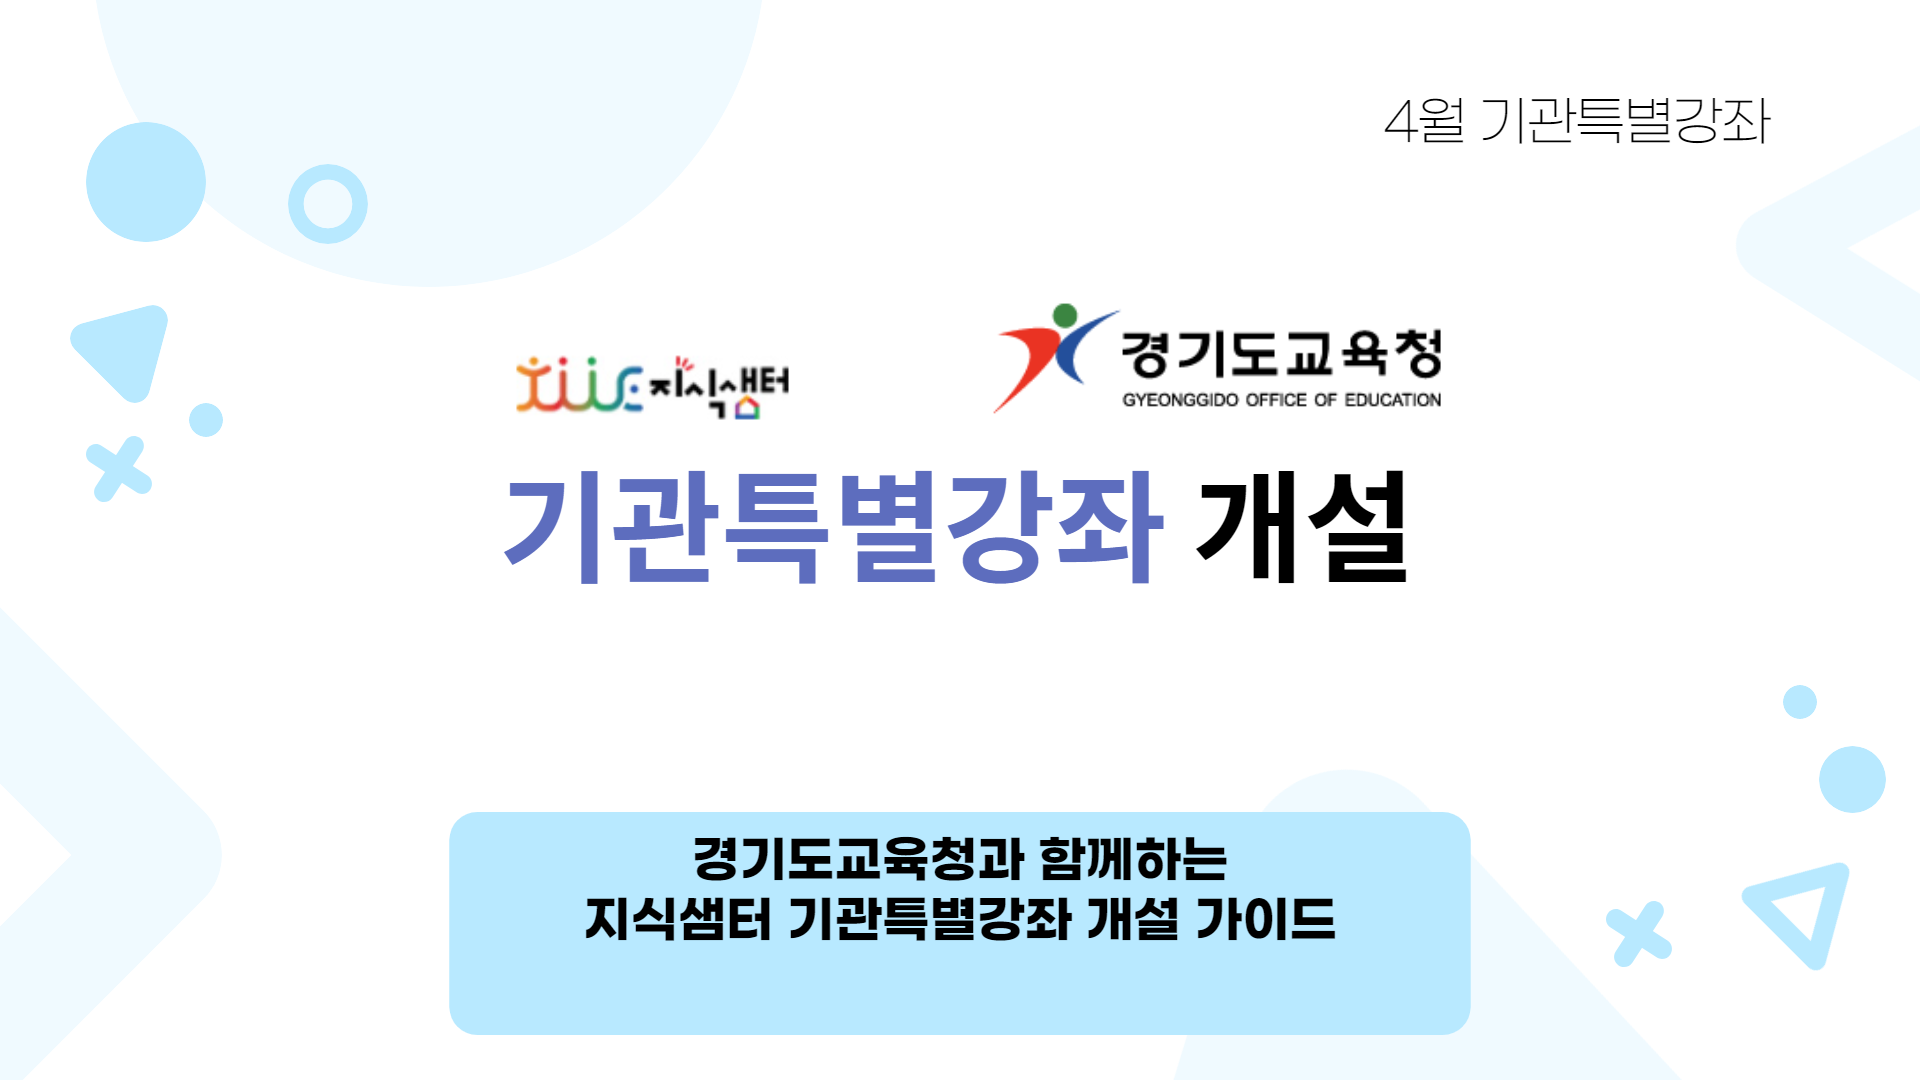 경기도교육청과 함께하는 지식샘터 기관특별강좌 개설 가이드